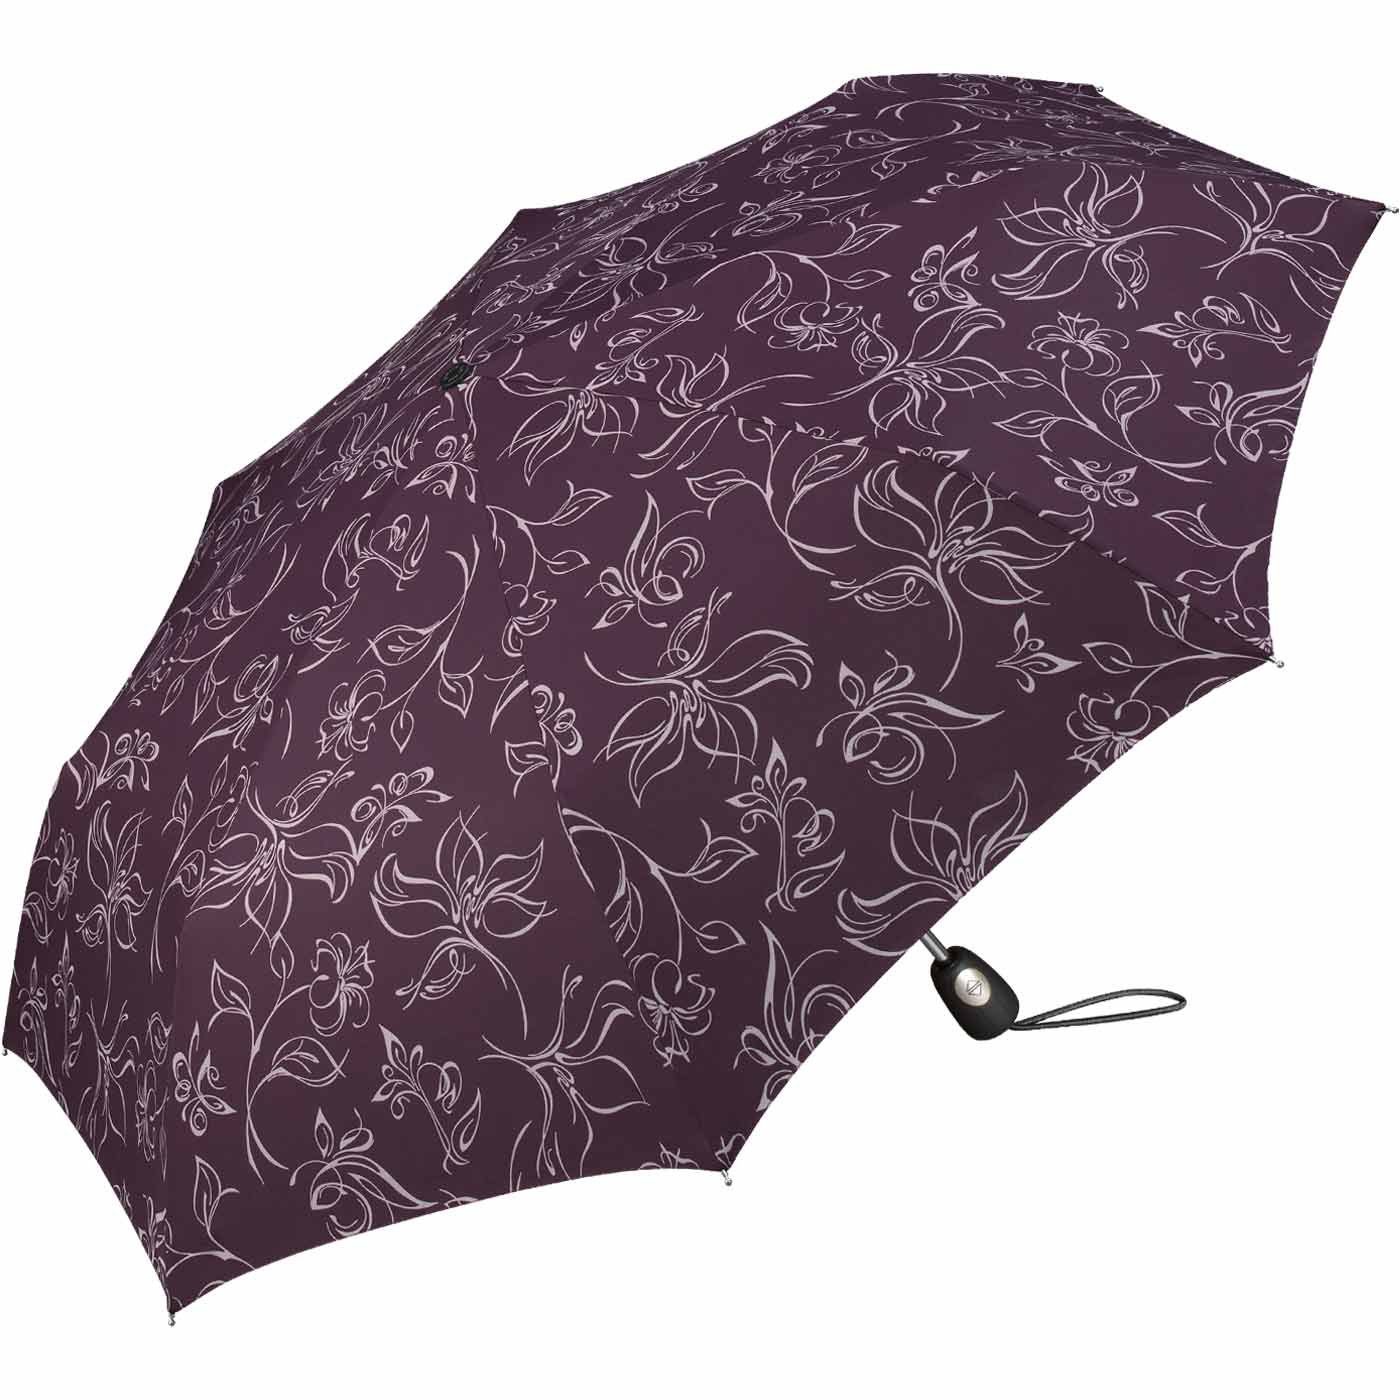 Pierre Cardin Taschenregenschirm weiß-bordeauxrot schöner mit Blumenskizzen wunderschönen Auf-Zu-Automatik, Damen-Regenschirm mit